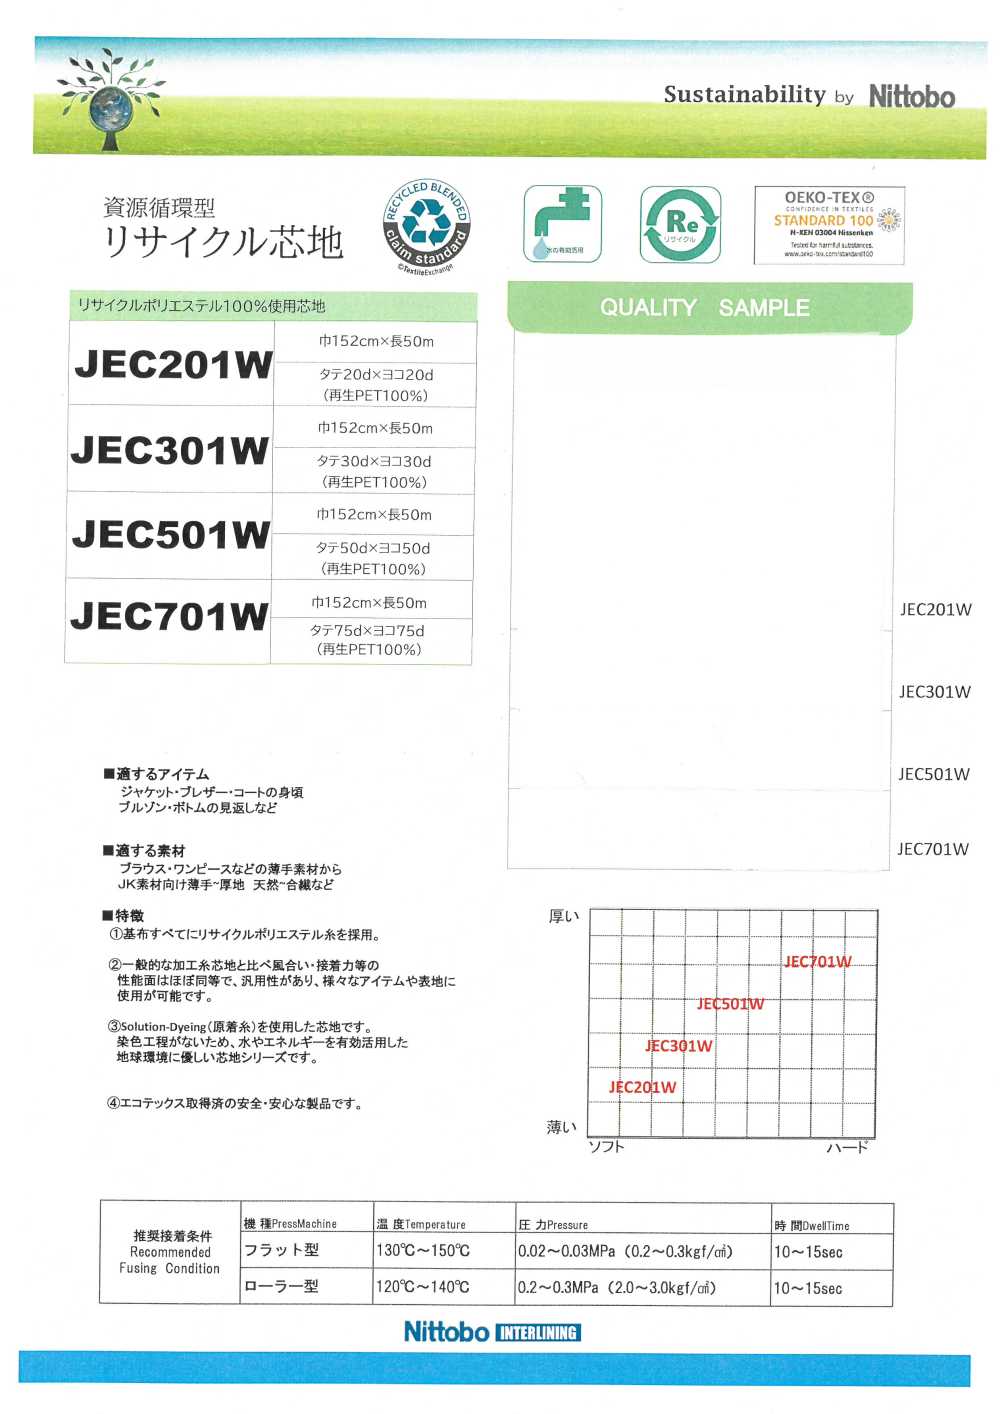 JEC701W Materiales Reciclados Finos, Versátiles Y Blandos Entretela 75D Utilizados Nittobo